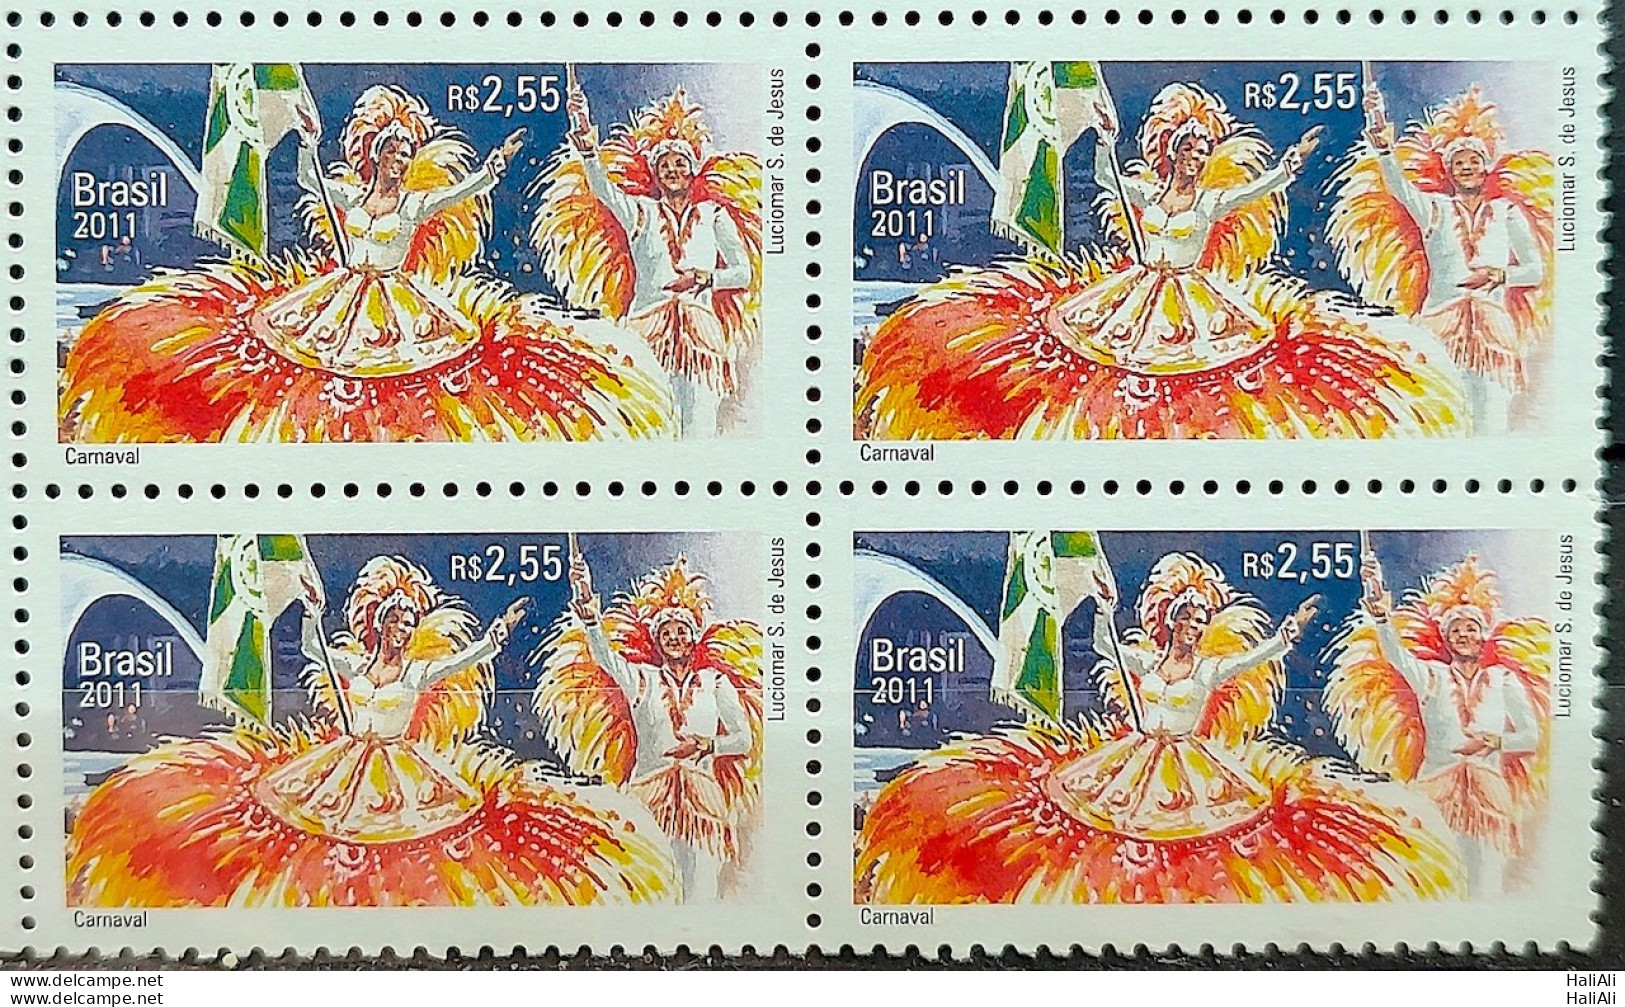 C 3150 Brazil Stamp Diplomatic Relations Belgium Carnival Art 2011 Block Of 4 - Unused Stamps